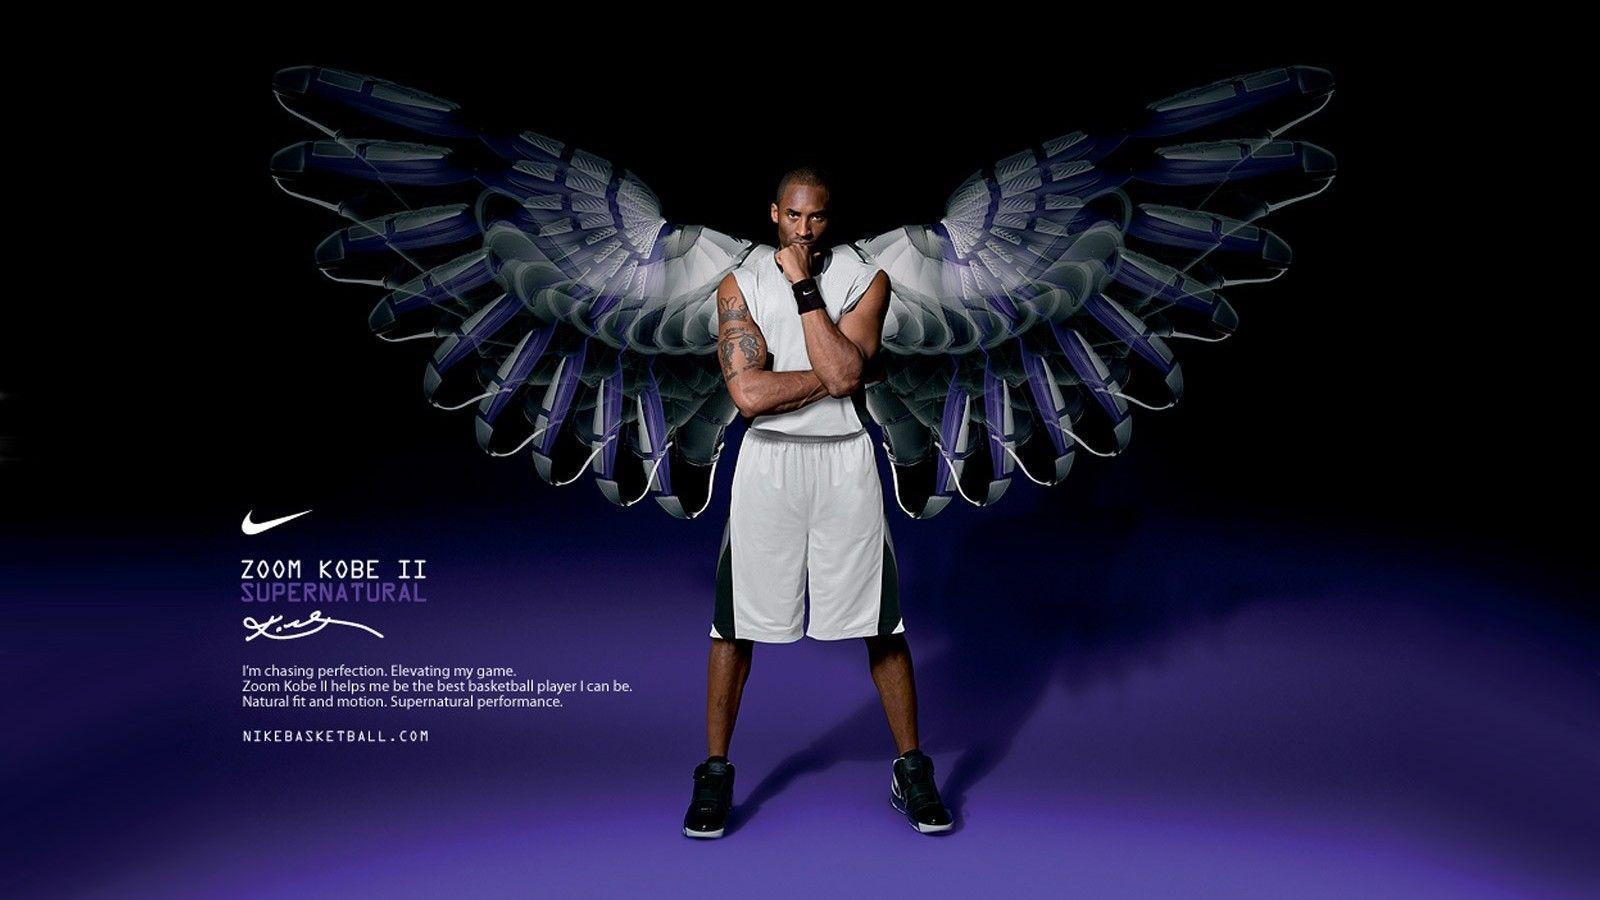 Kobe Bryant Nike Shoes Wallpaper HD 1600x1200PX Wallpaper Nike